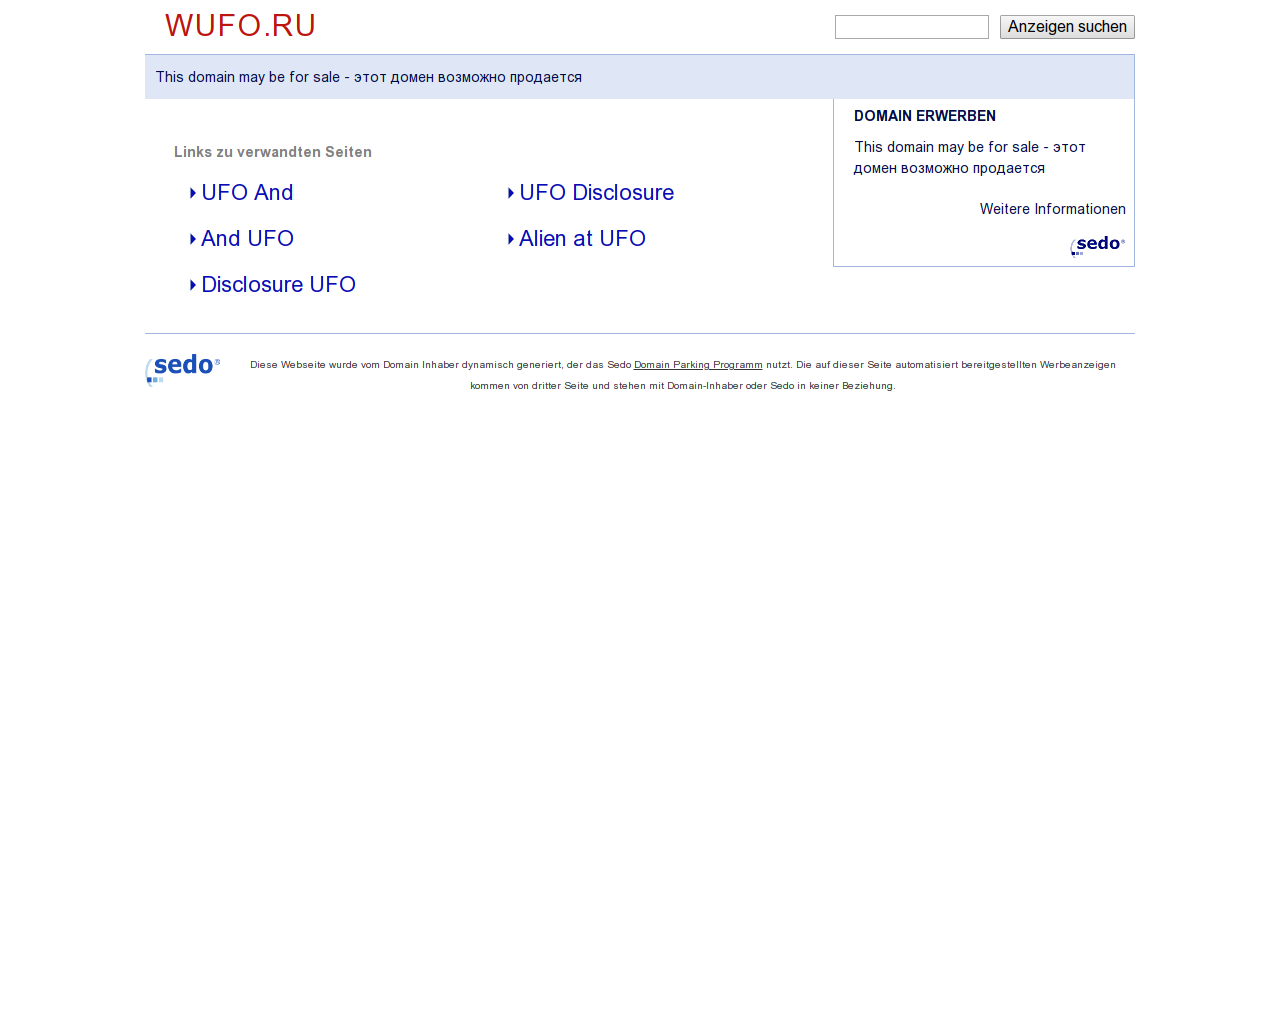 Изображение сайта wufo.ru в разрешении 1280x1024